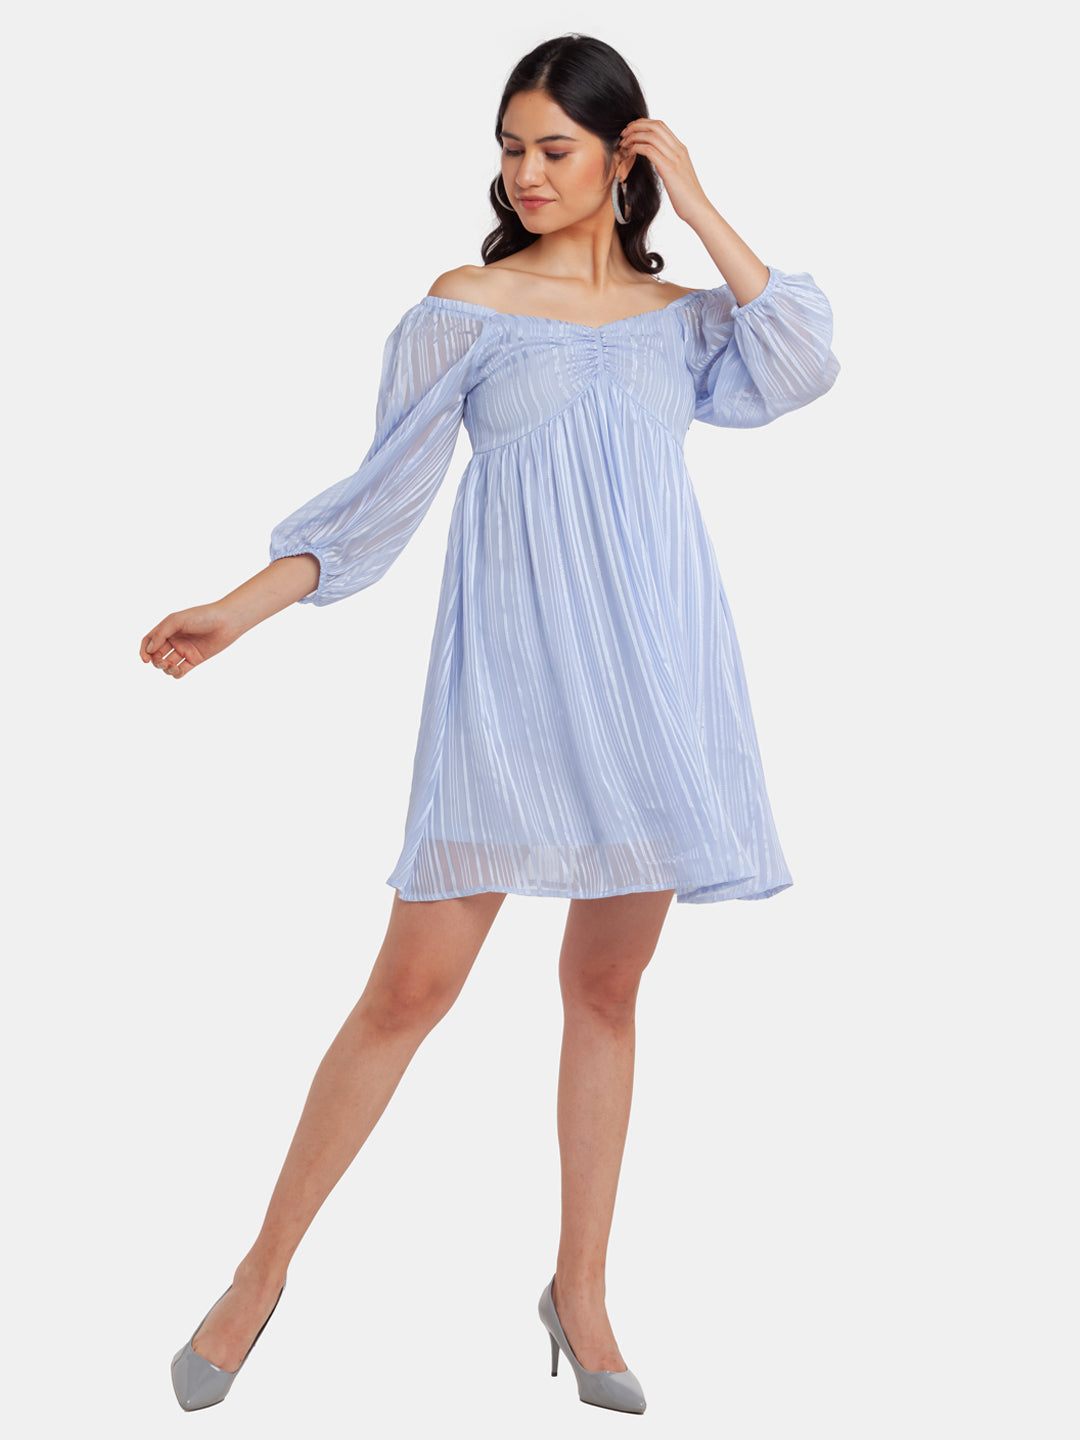 Blue Puff Sleeve Short Dress For Women